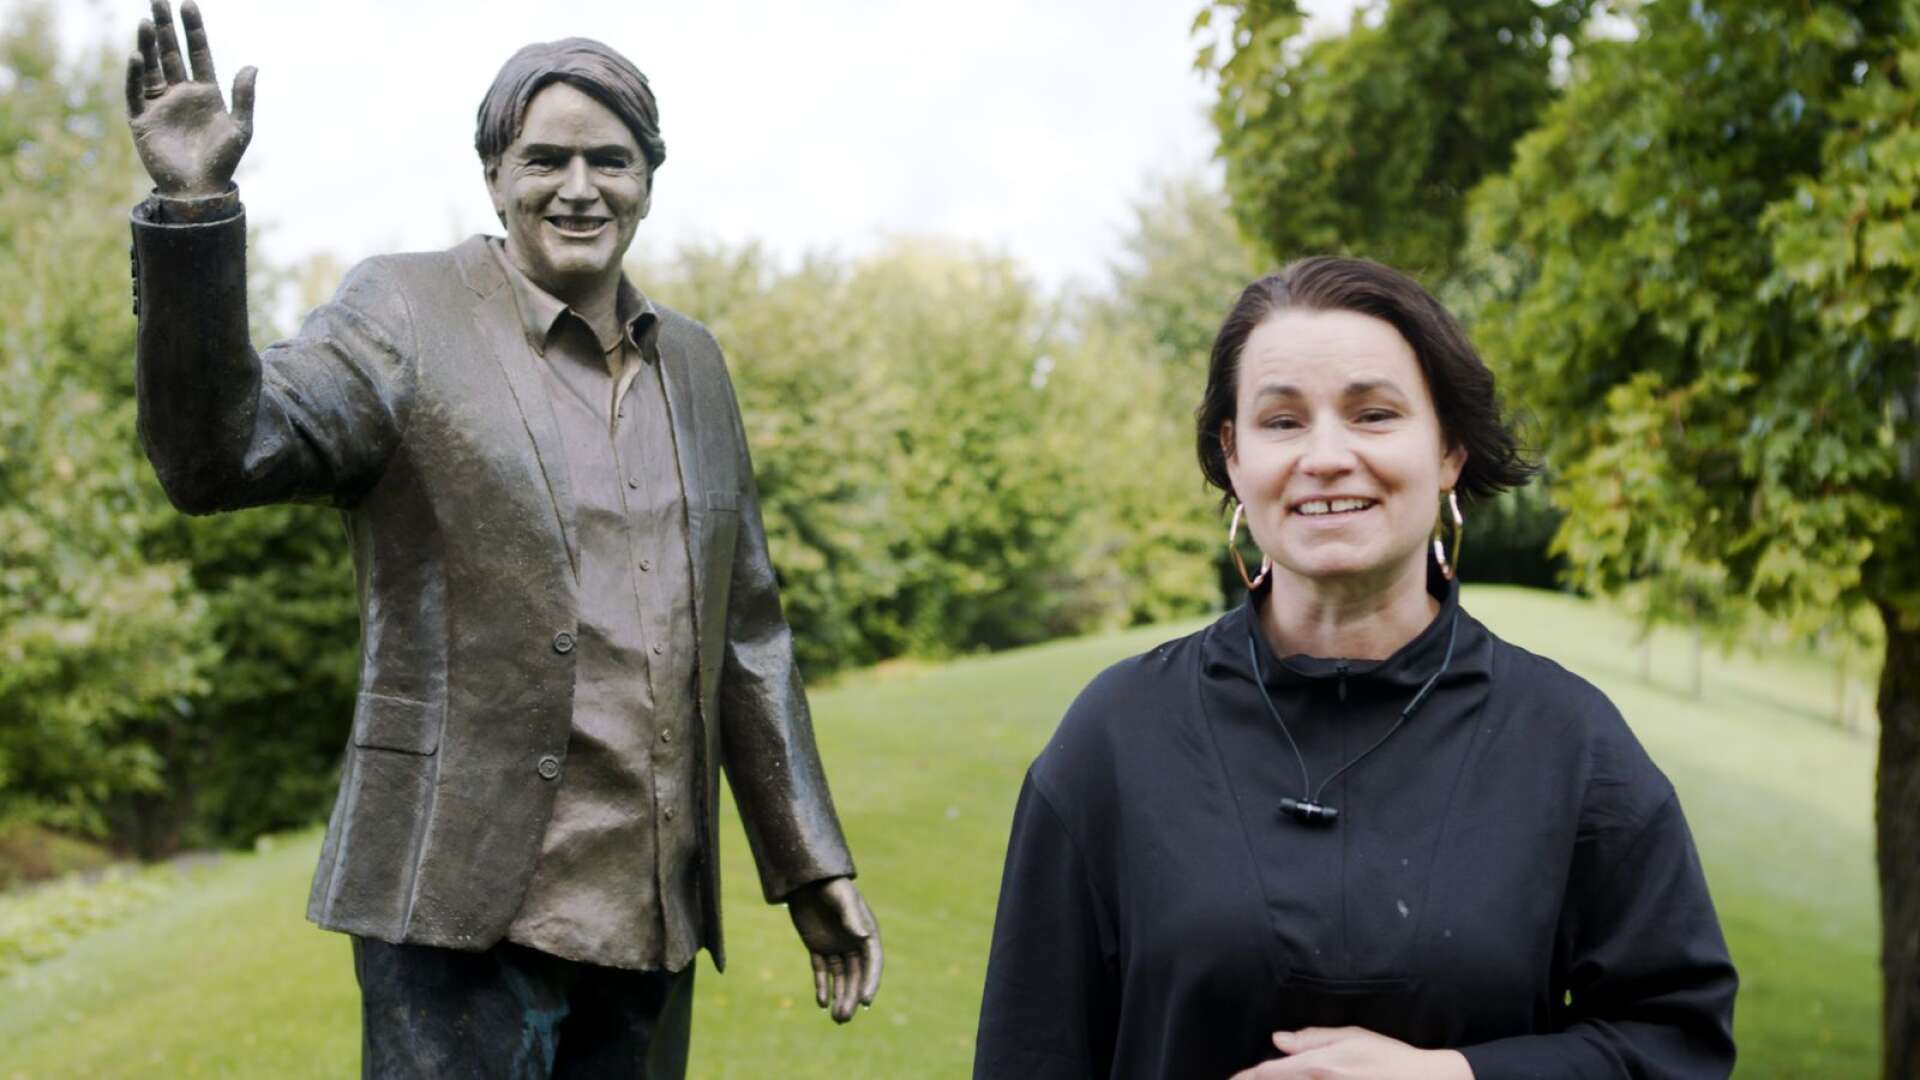 Konstnären Assa Kauppi tog sig an det grannlaga arbetet att göra en staty till Sven-Erik Magnussons minne och ära. Nu är den på plats, på Sandgrundsudden.